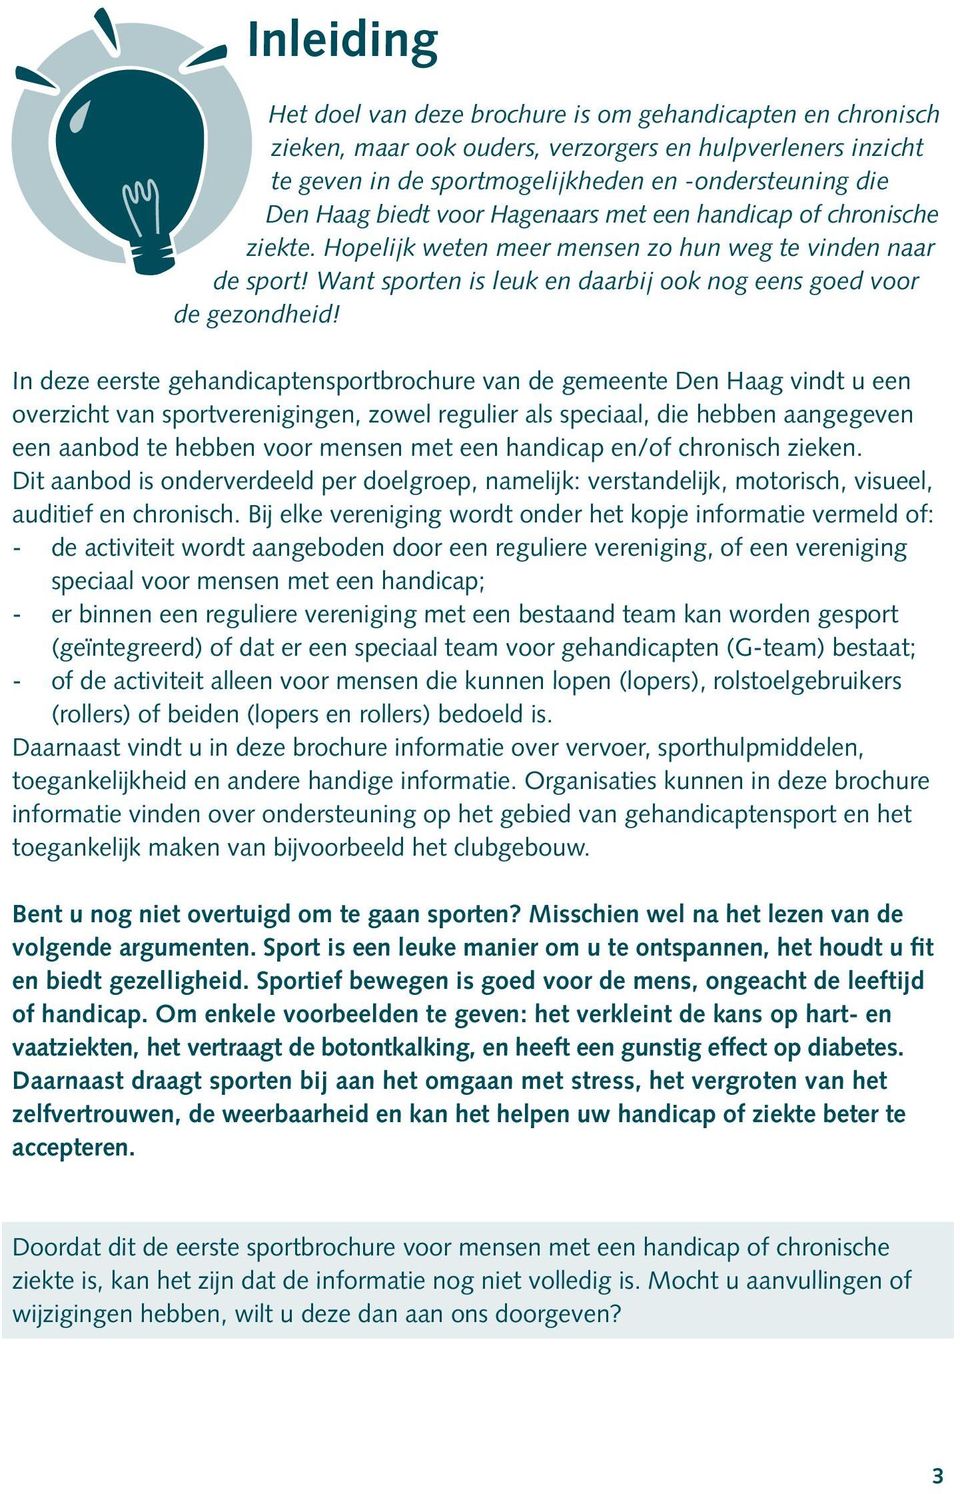 In deze eerste gehandicaptensportbrochure van de gemeente Den Haag vindt u een overzicht van sportverenigingen, zowel regulier als speciaal, die hebben aangegeven een aanbod te hebben voor mensen met